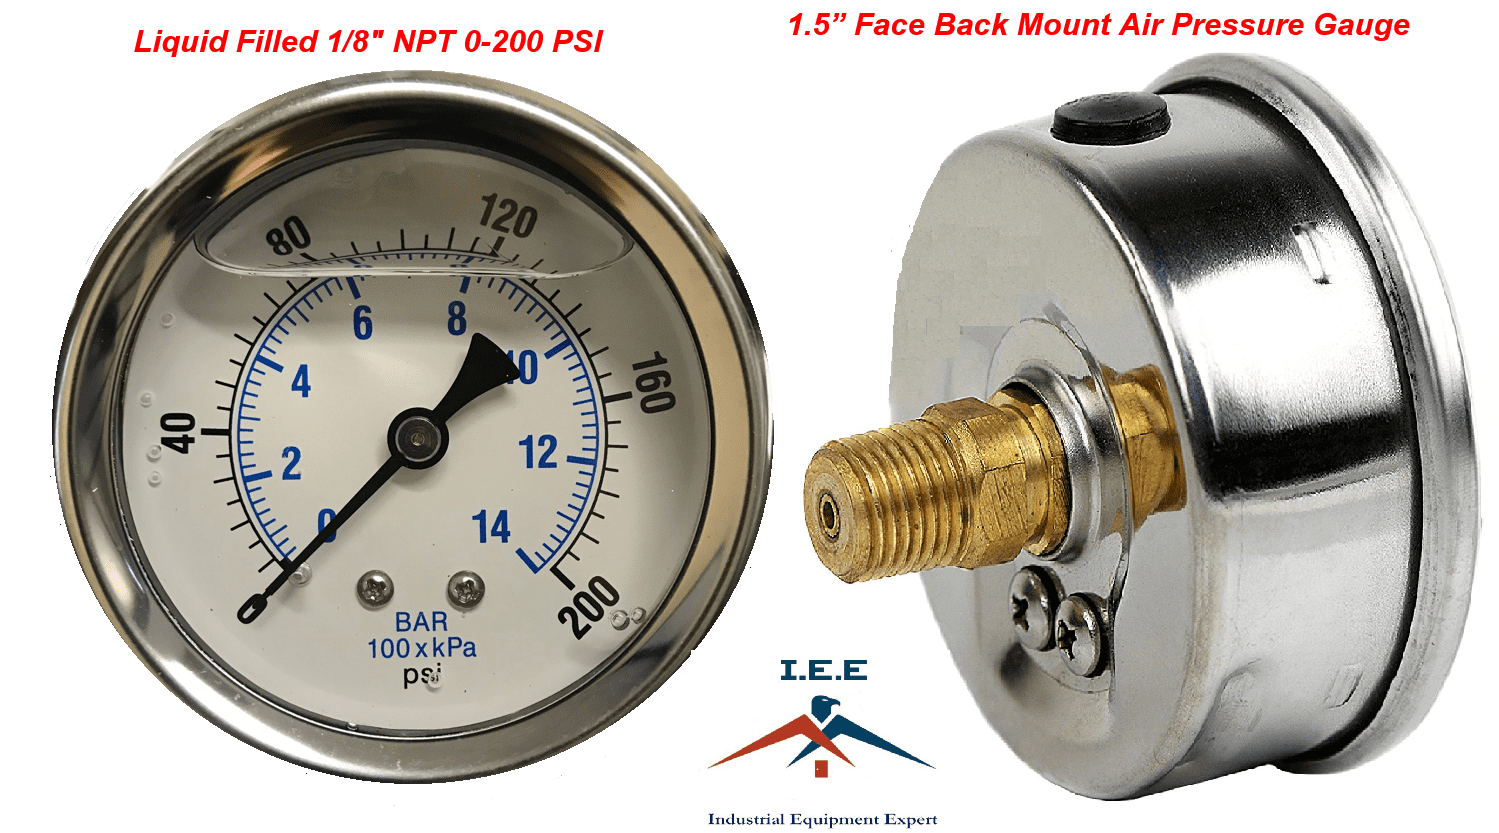 Lot 8 Acutek Air Pressure Utility Gauge  200 PSI 1.5" Dial 1/8" NPT Back mount 